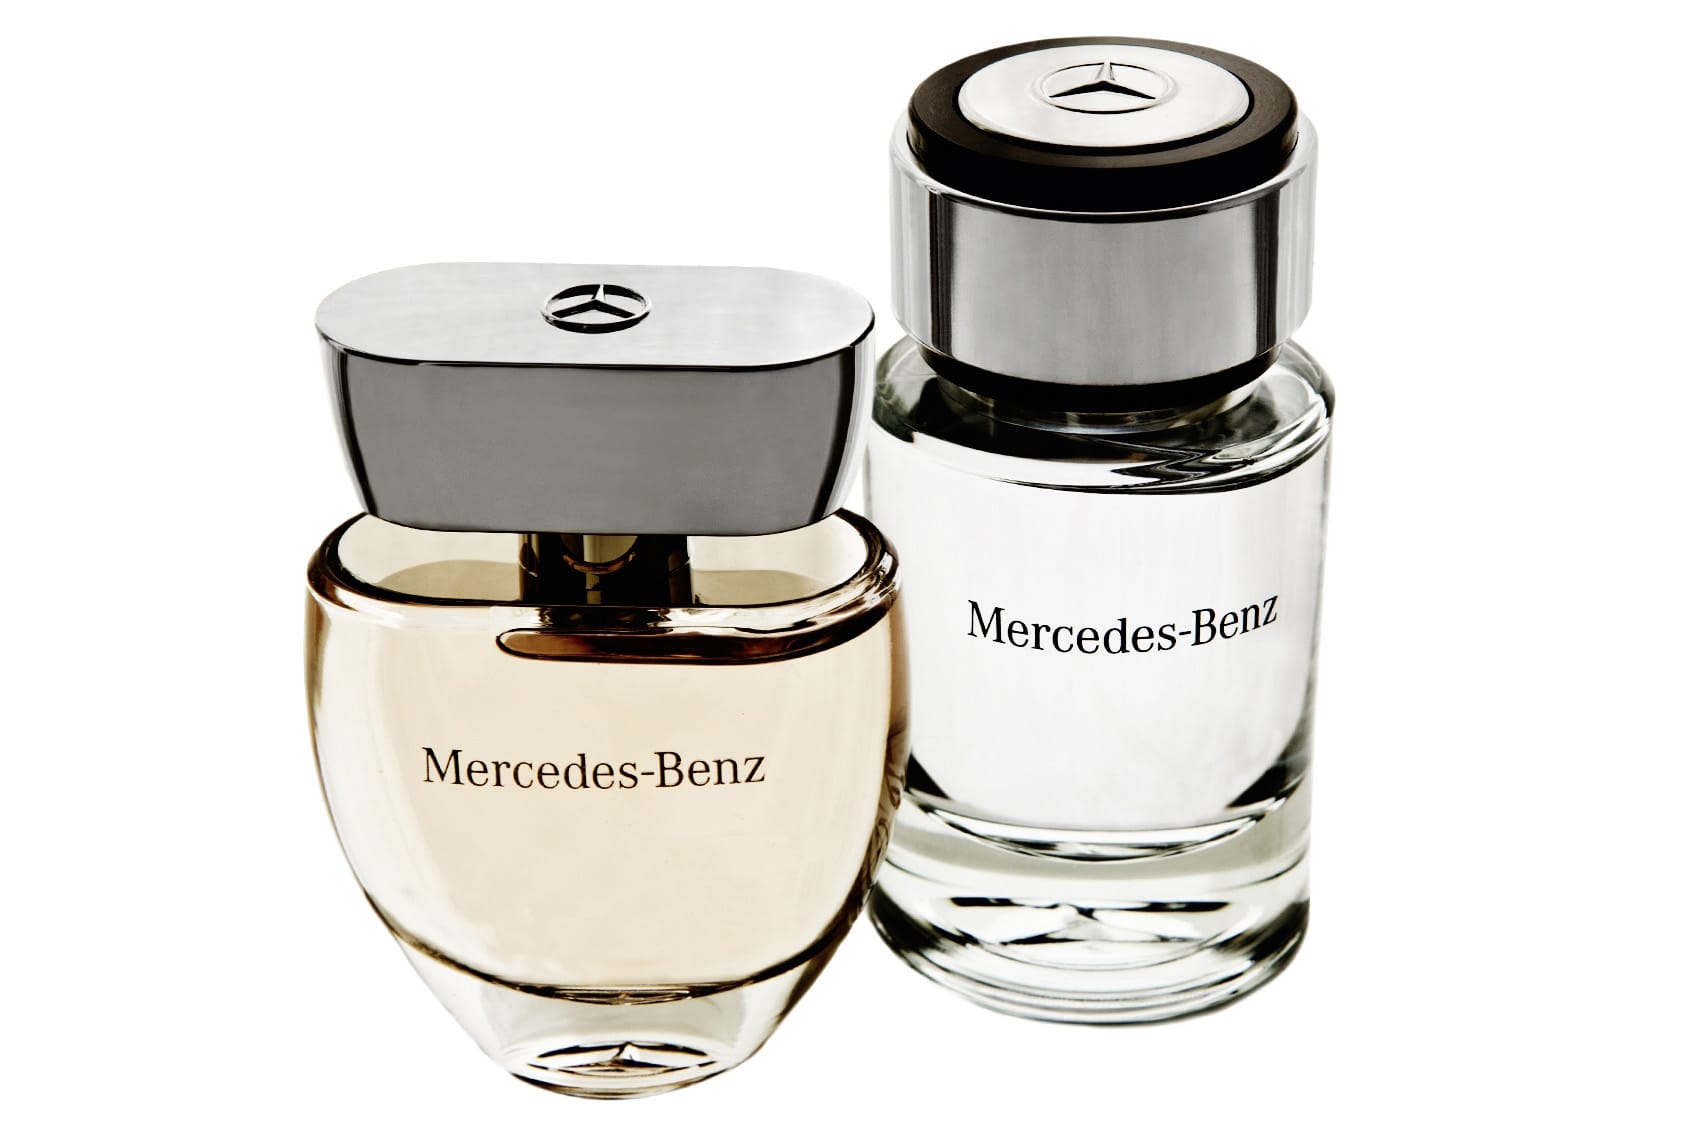 Das Mercedes-Benz Perfume gibt es für Frauen und Männer. Das Classic Men - Eau de Toilette (im Bild rechts) für Männer kostet rund 45 Euro (44 Milliliter). Das Eau des Parfum für Damen (im Bild links) kostet als 30-Milliliter-Flacon rund 50 Euro.